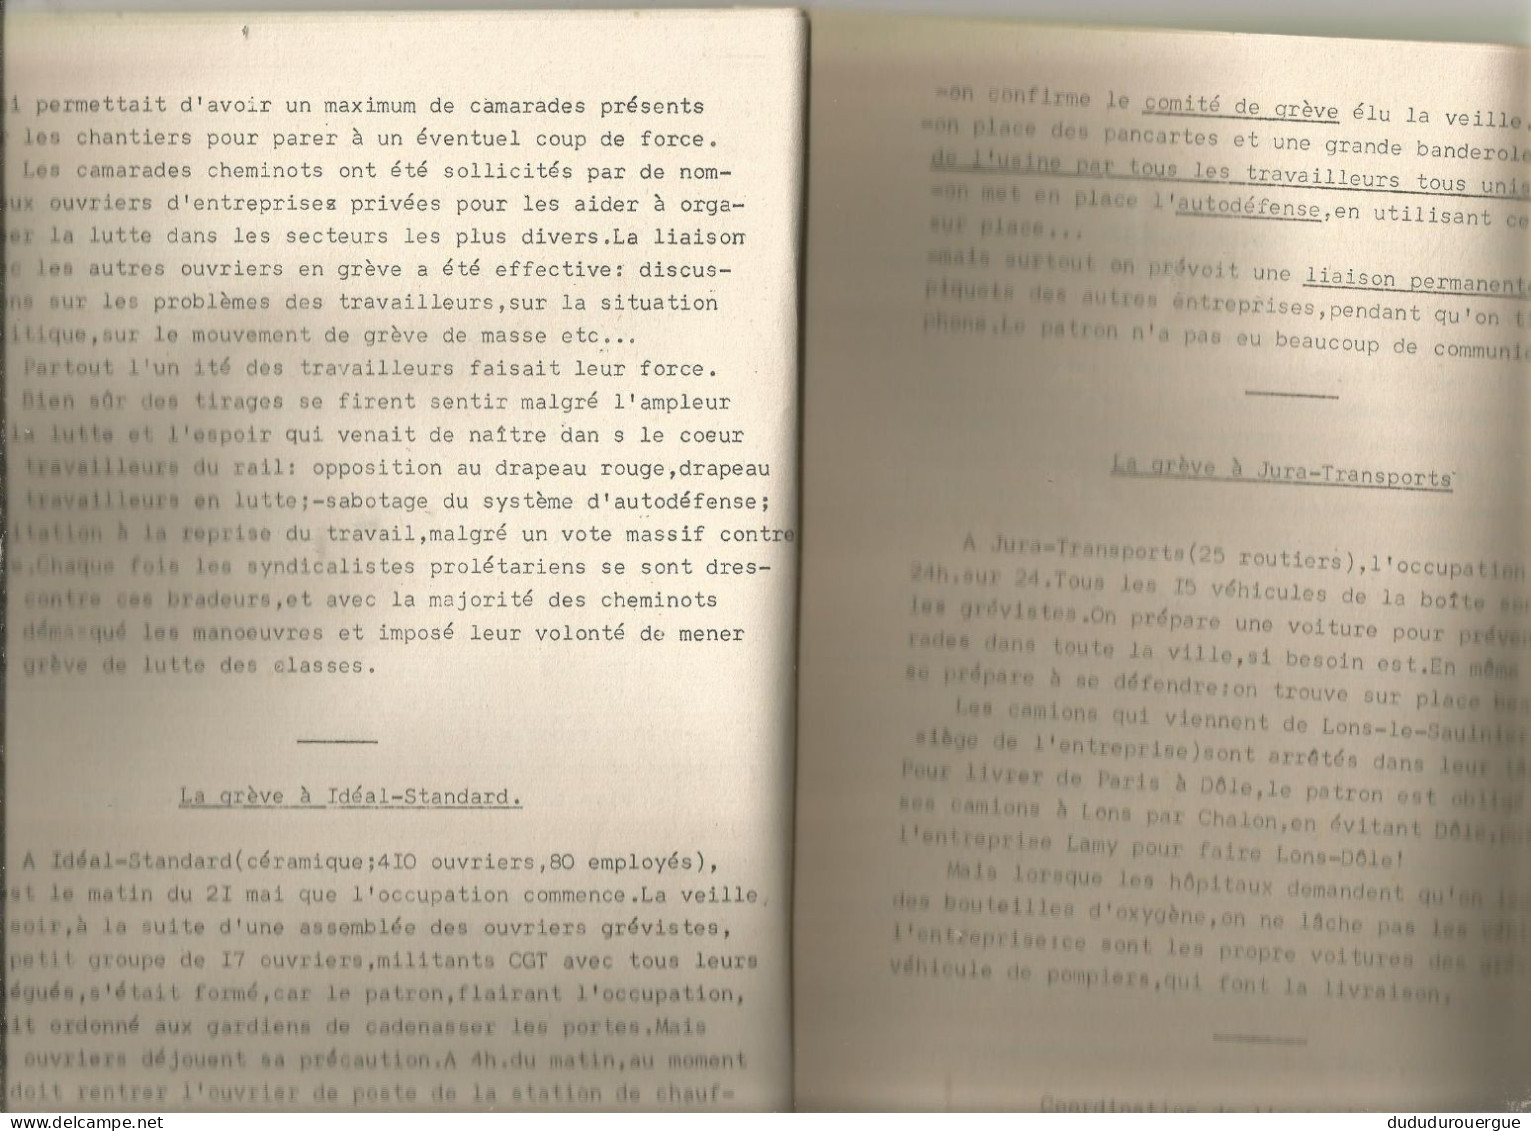 LE PROLETARIEN ; BULLETIN DES COMMUNISTES PROLETARIENS DE FRANCHE - COMTE : LE N ° 1 D AOUT 1968 - 1950 - Today